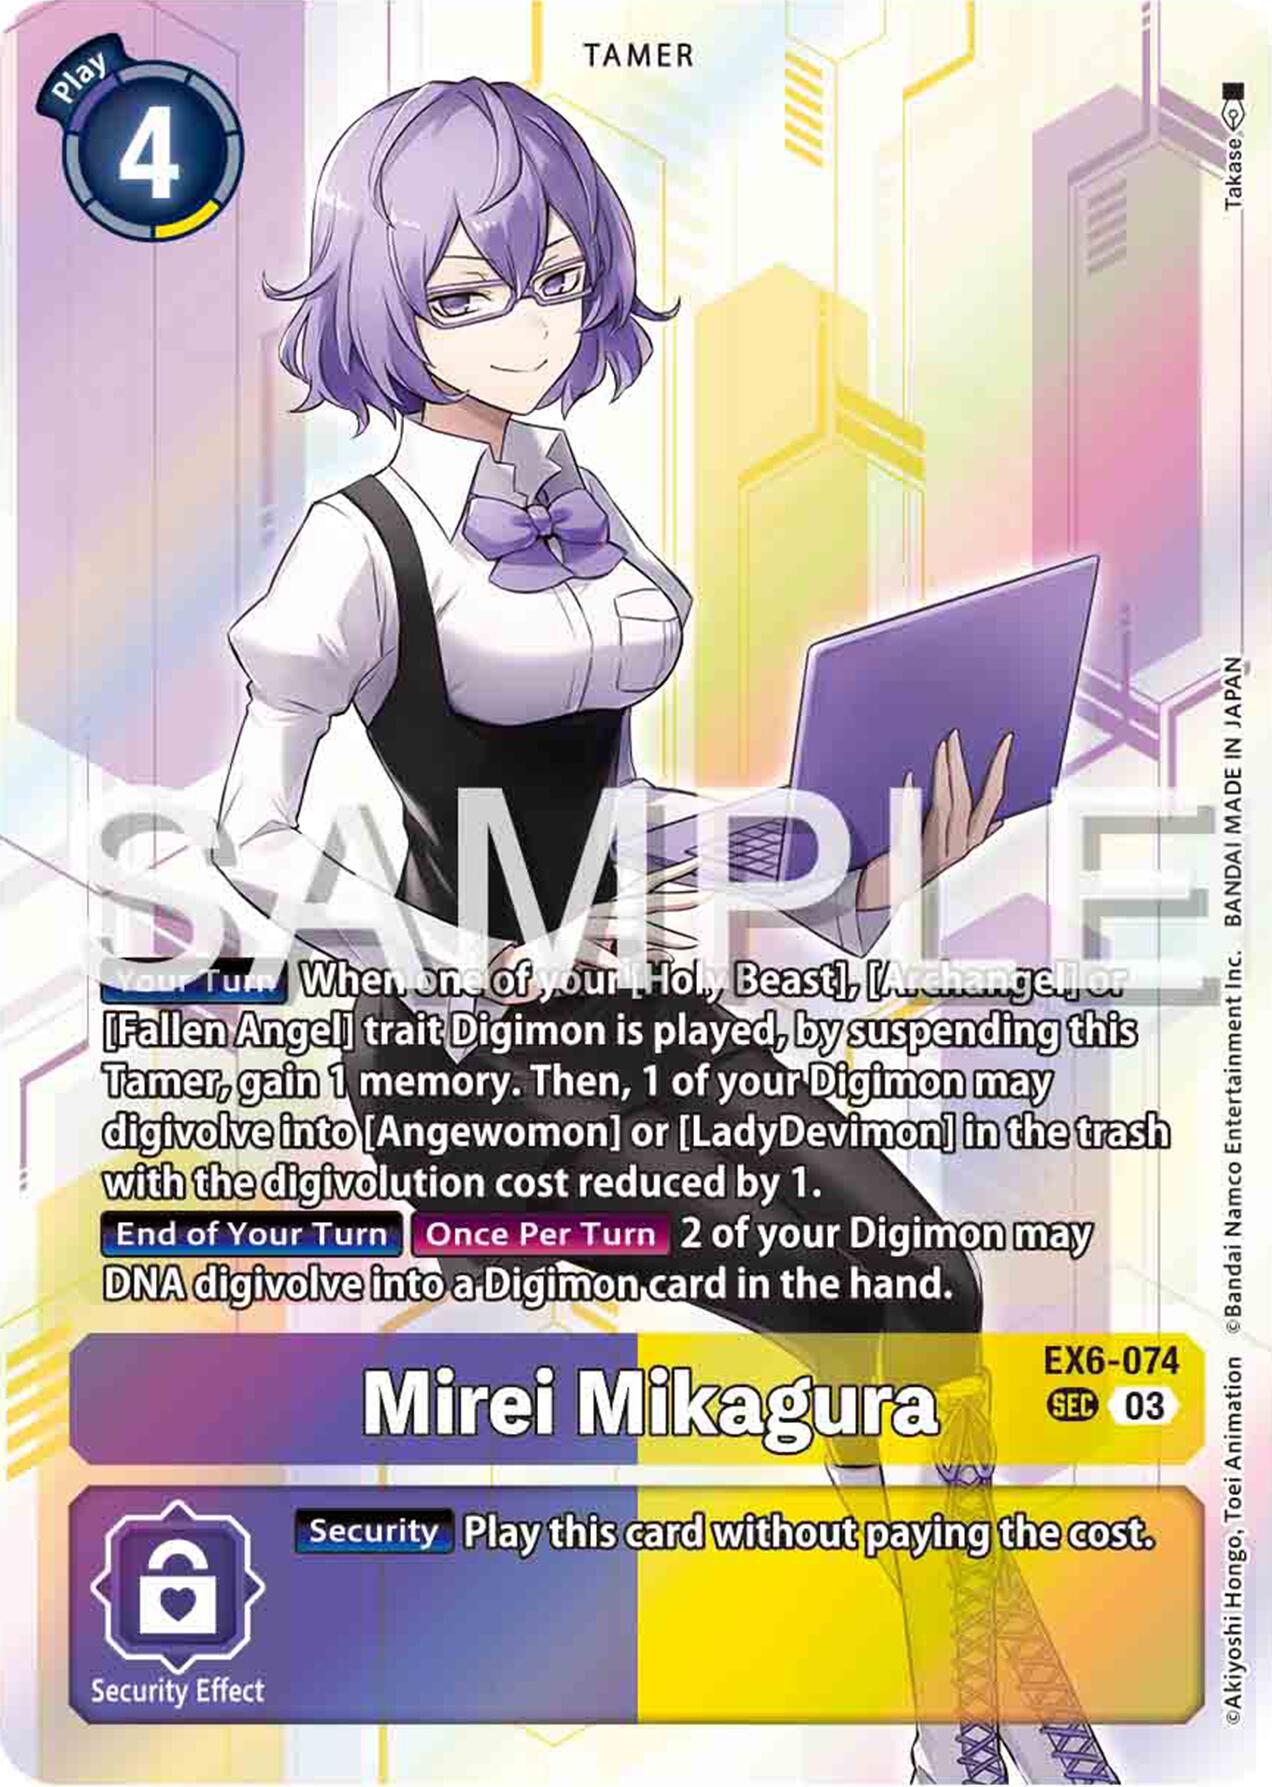 Mirei Mikagura [EX6-074] [Infernal Ascension] | Total Play